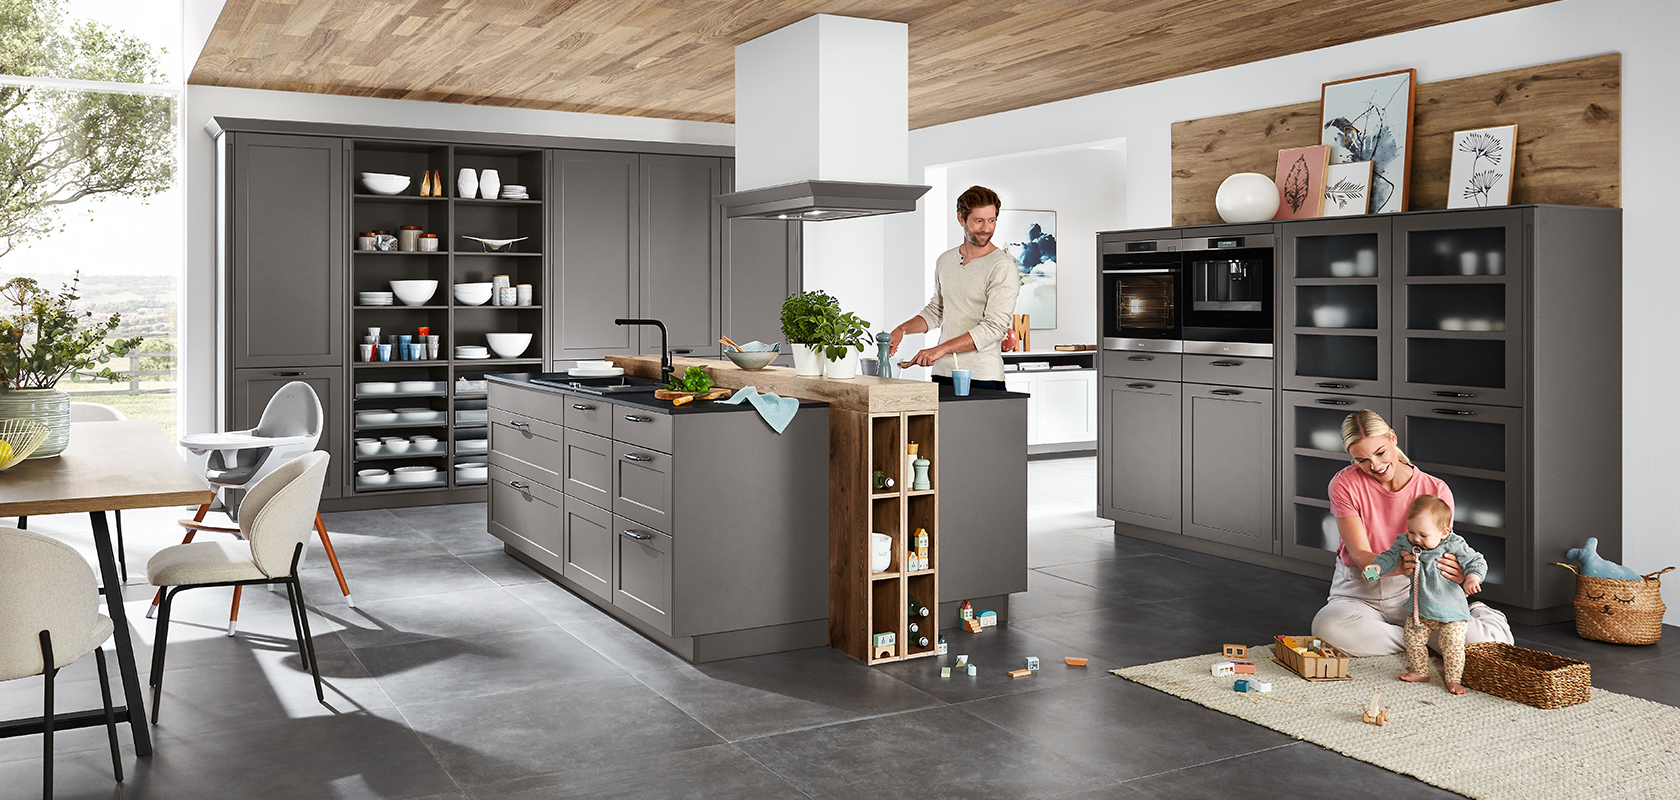 Escena de cocina contemporánea con una familia; un adulto cocinando, y otro jugando con un niño entre gabinetes grises elegantes y electrodomésticos modernos.